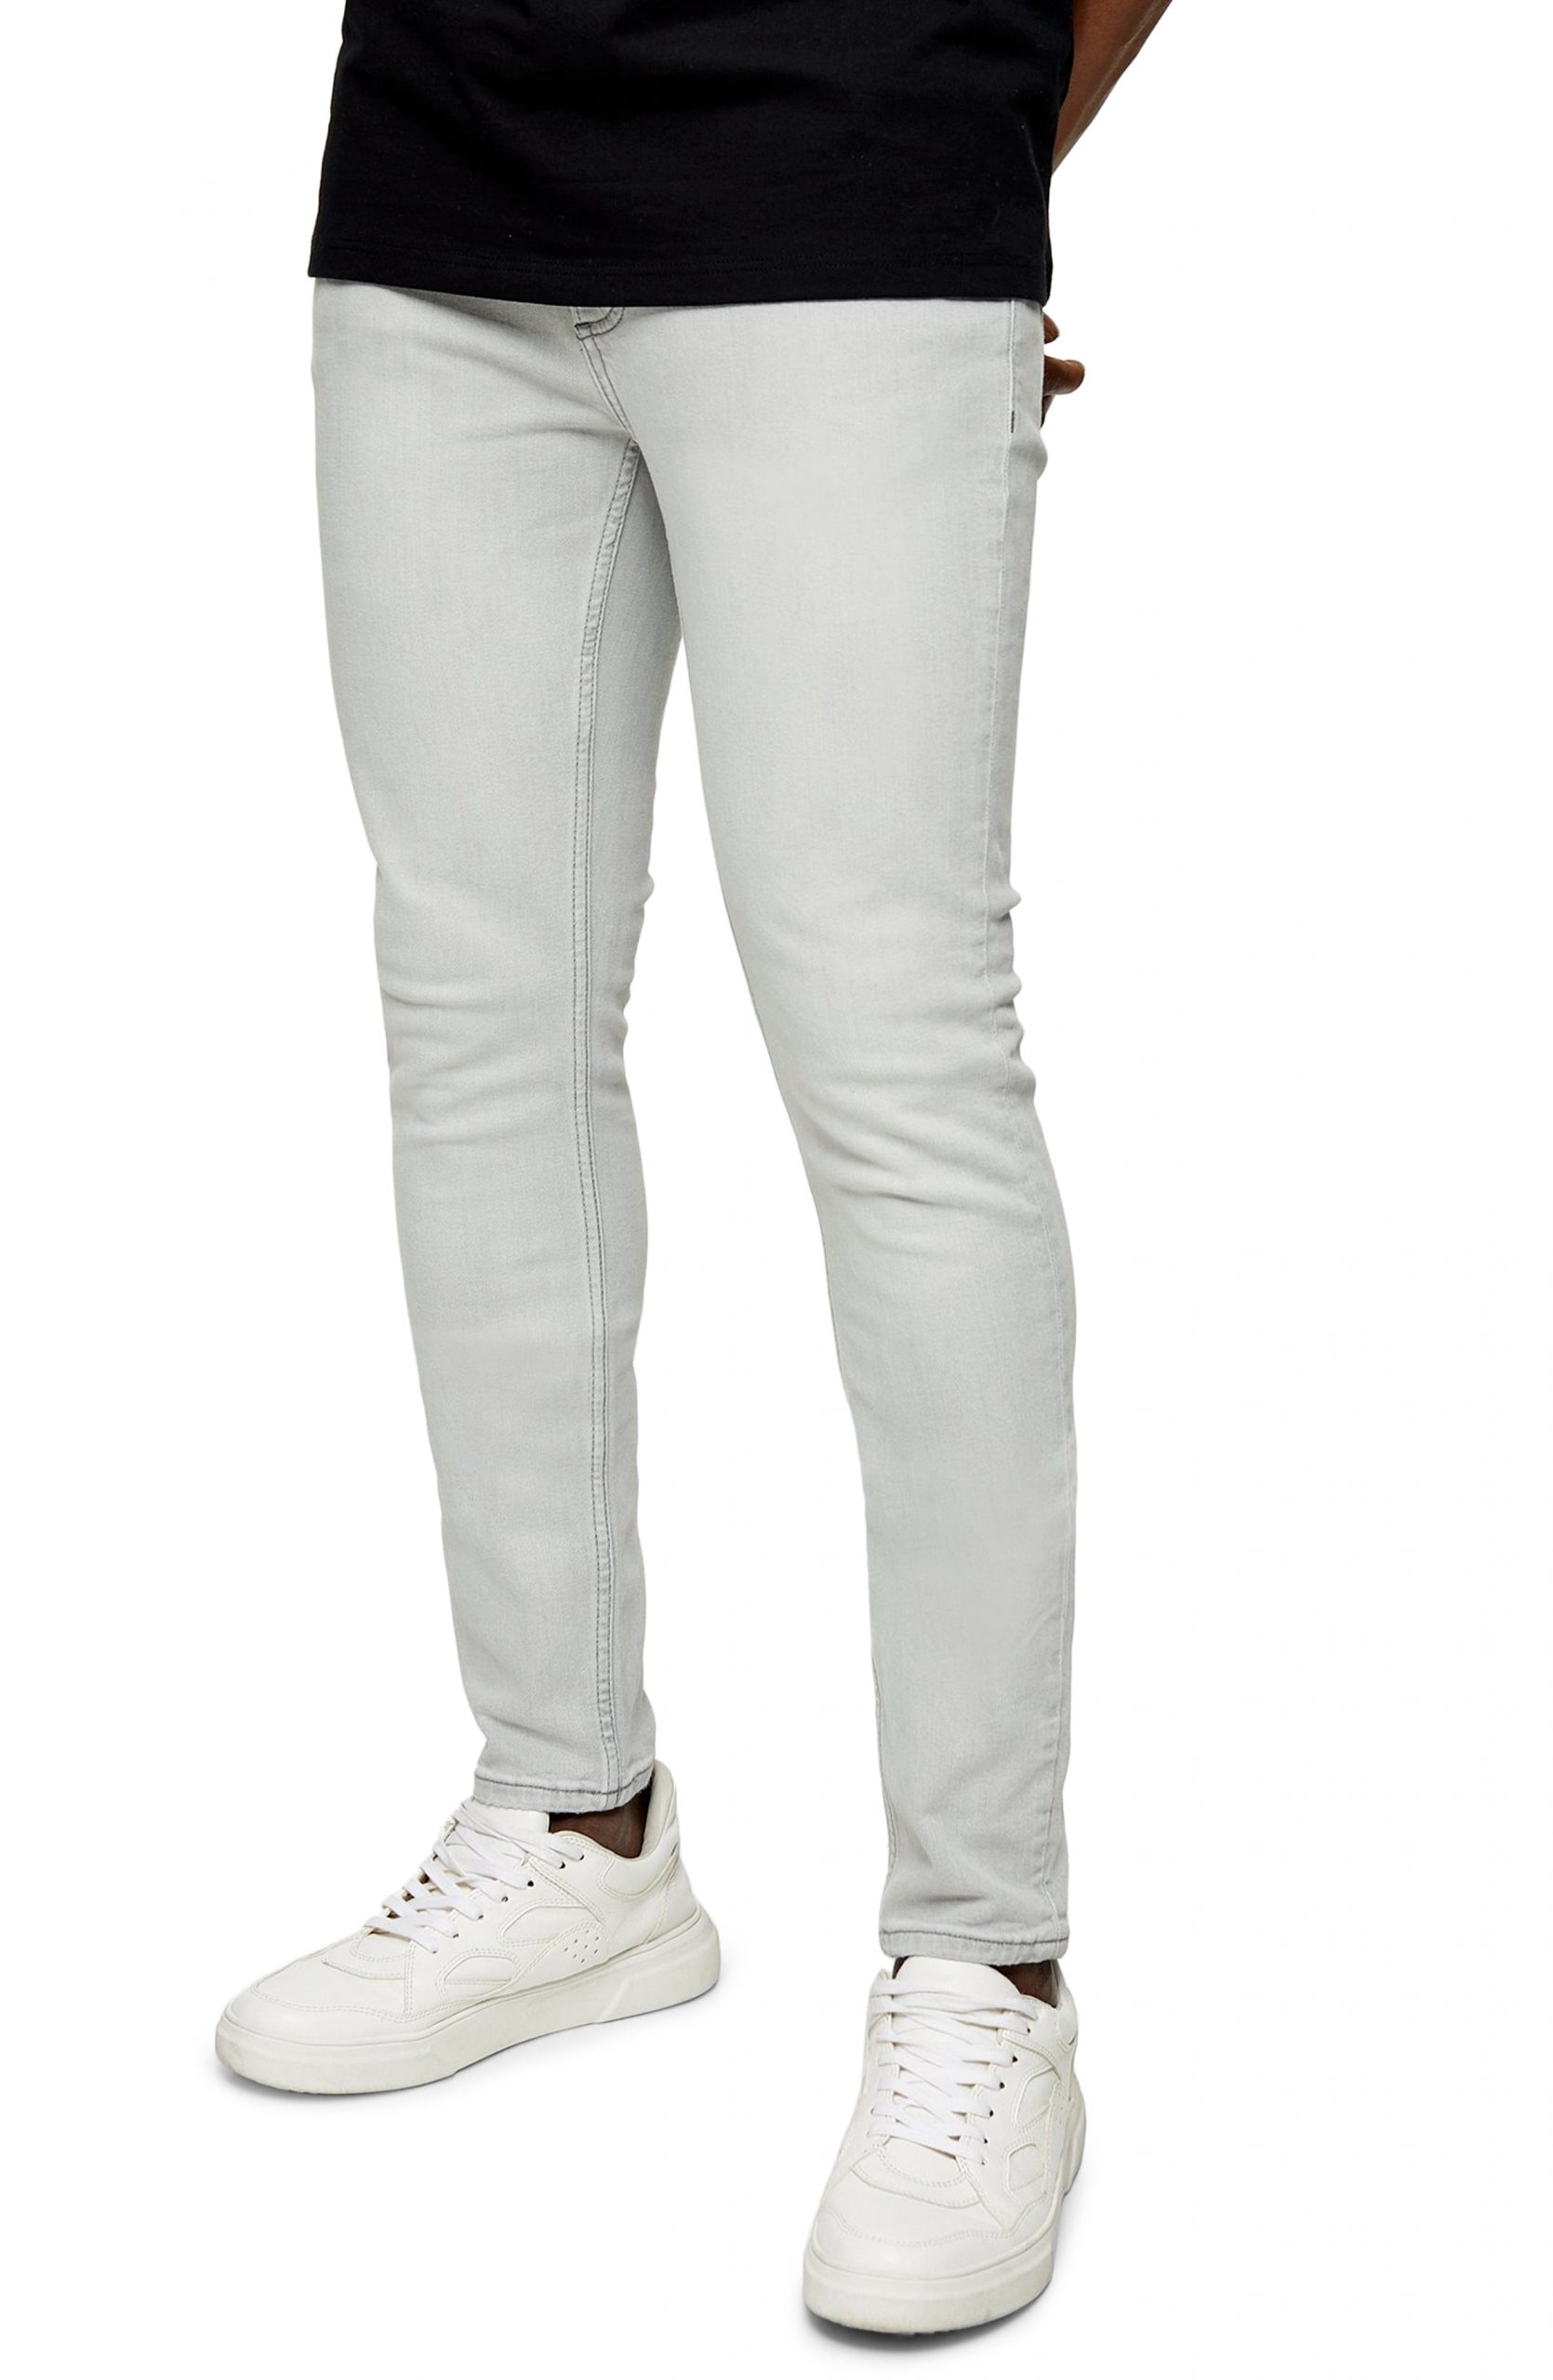 topman white jeans